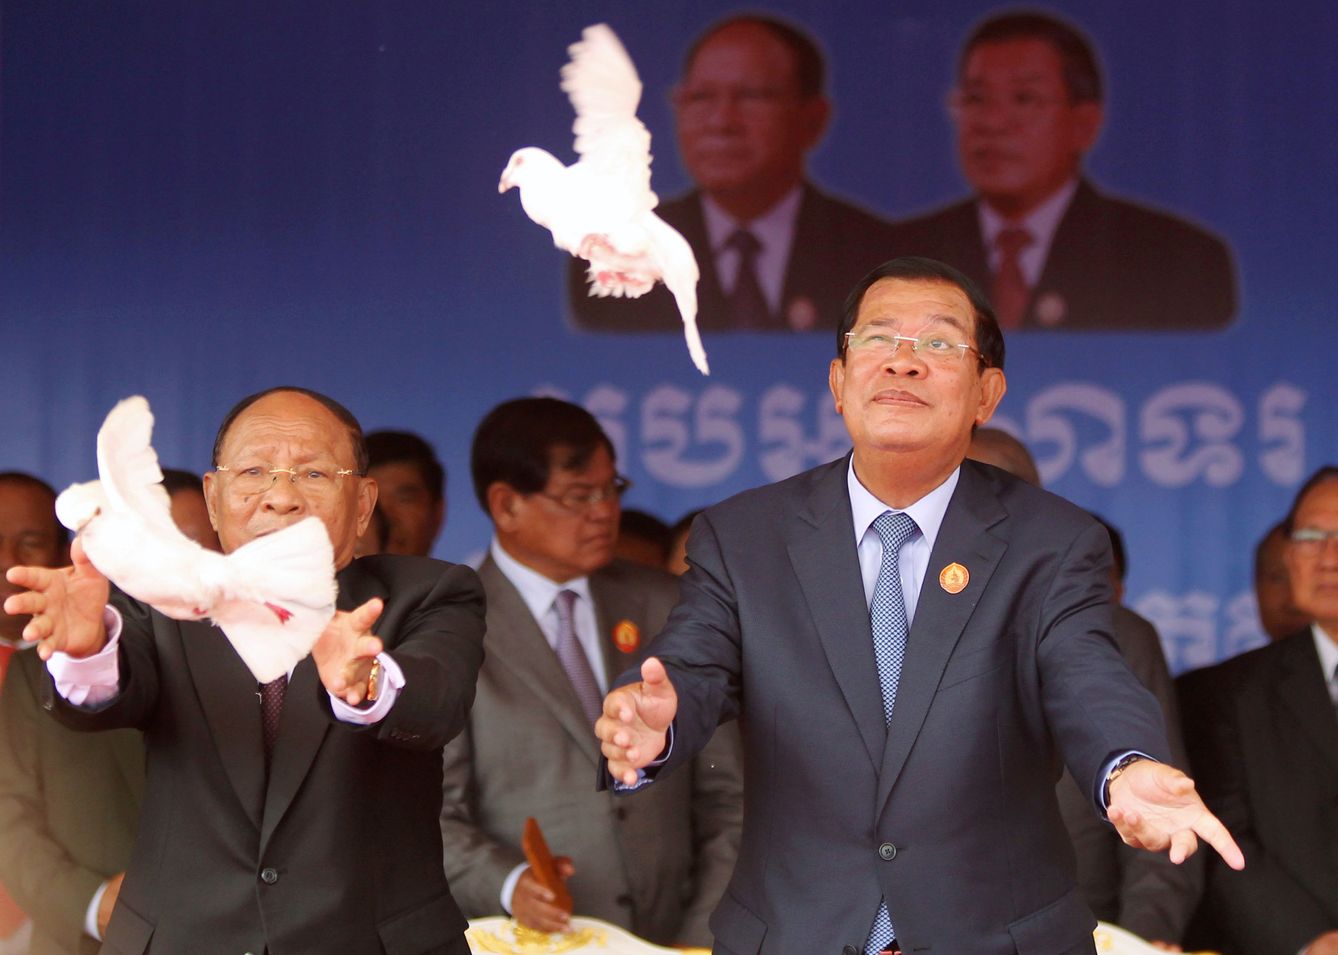 El primer ministro Hun Sen (derecha) suelta unas palomas durante un acto de su Partido del Pueblo Camboyano en Phnom Penh, en junio de 2017. (Reuters)